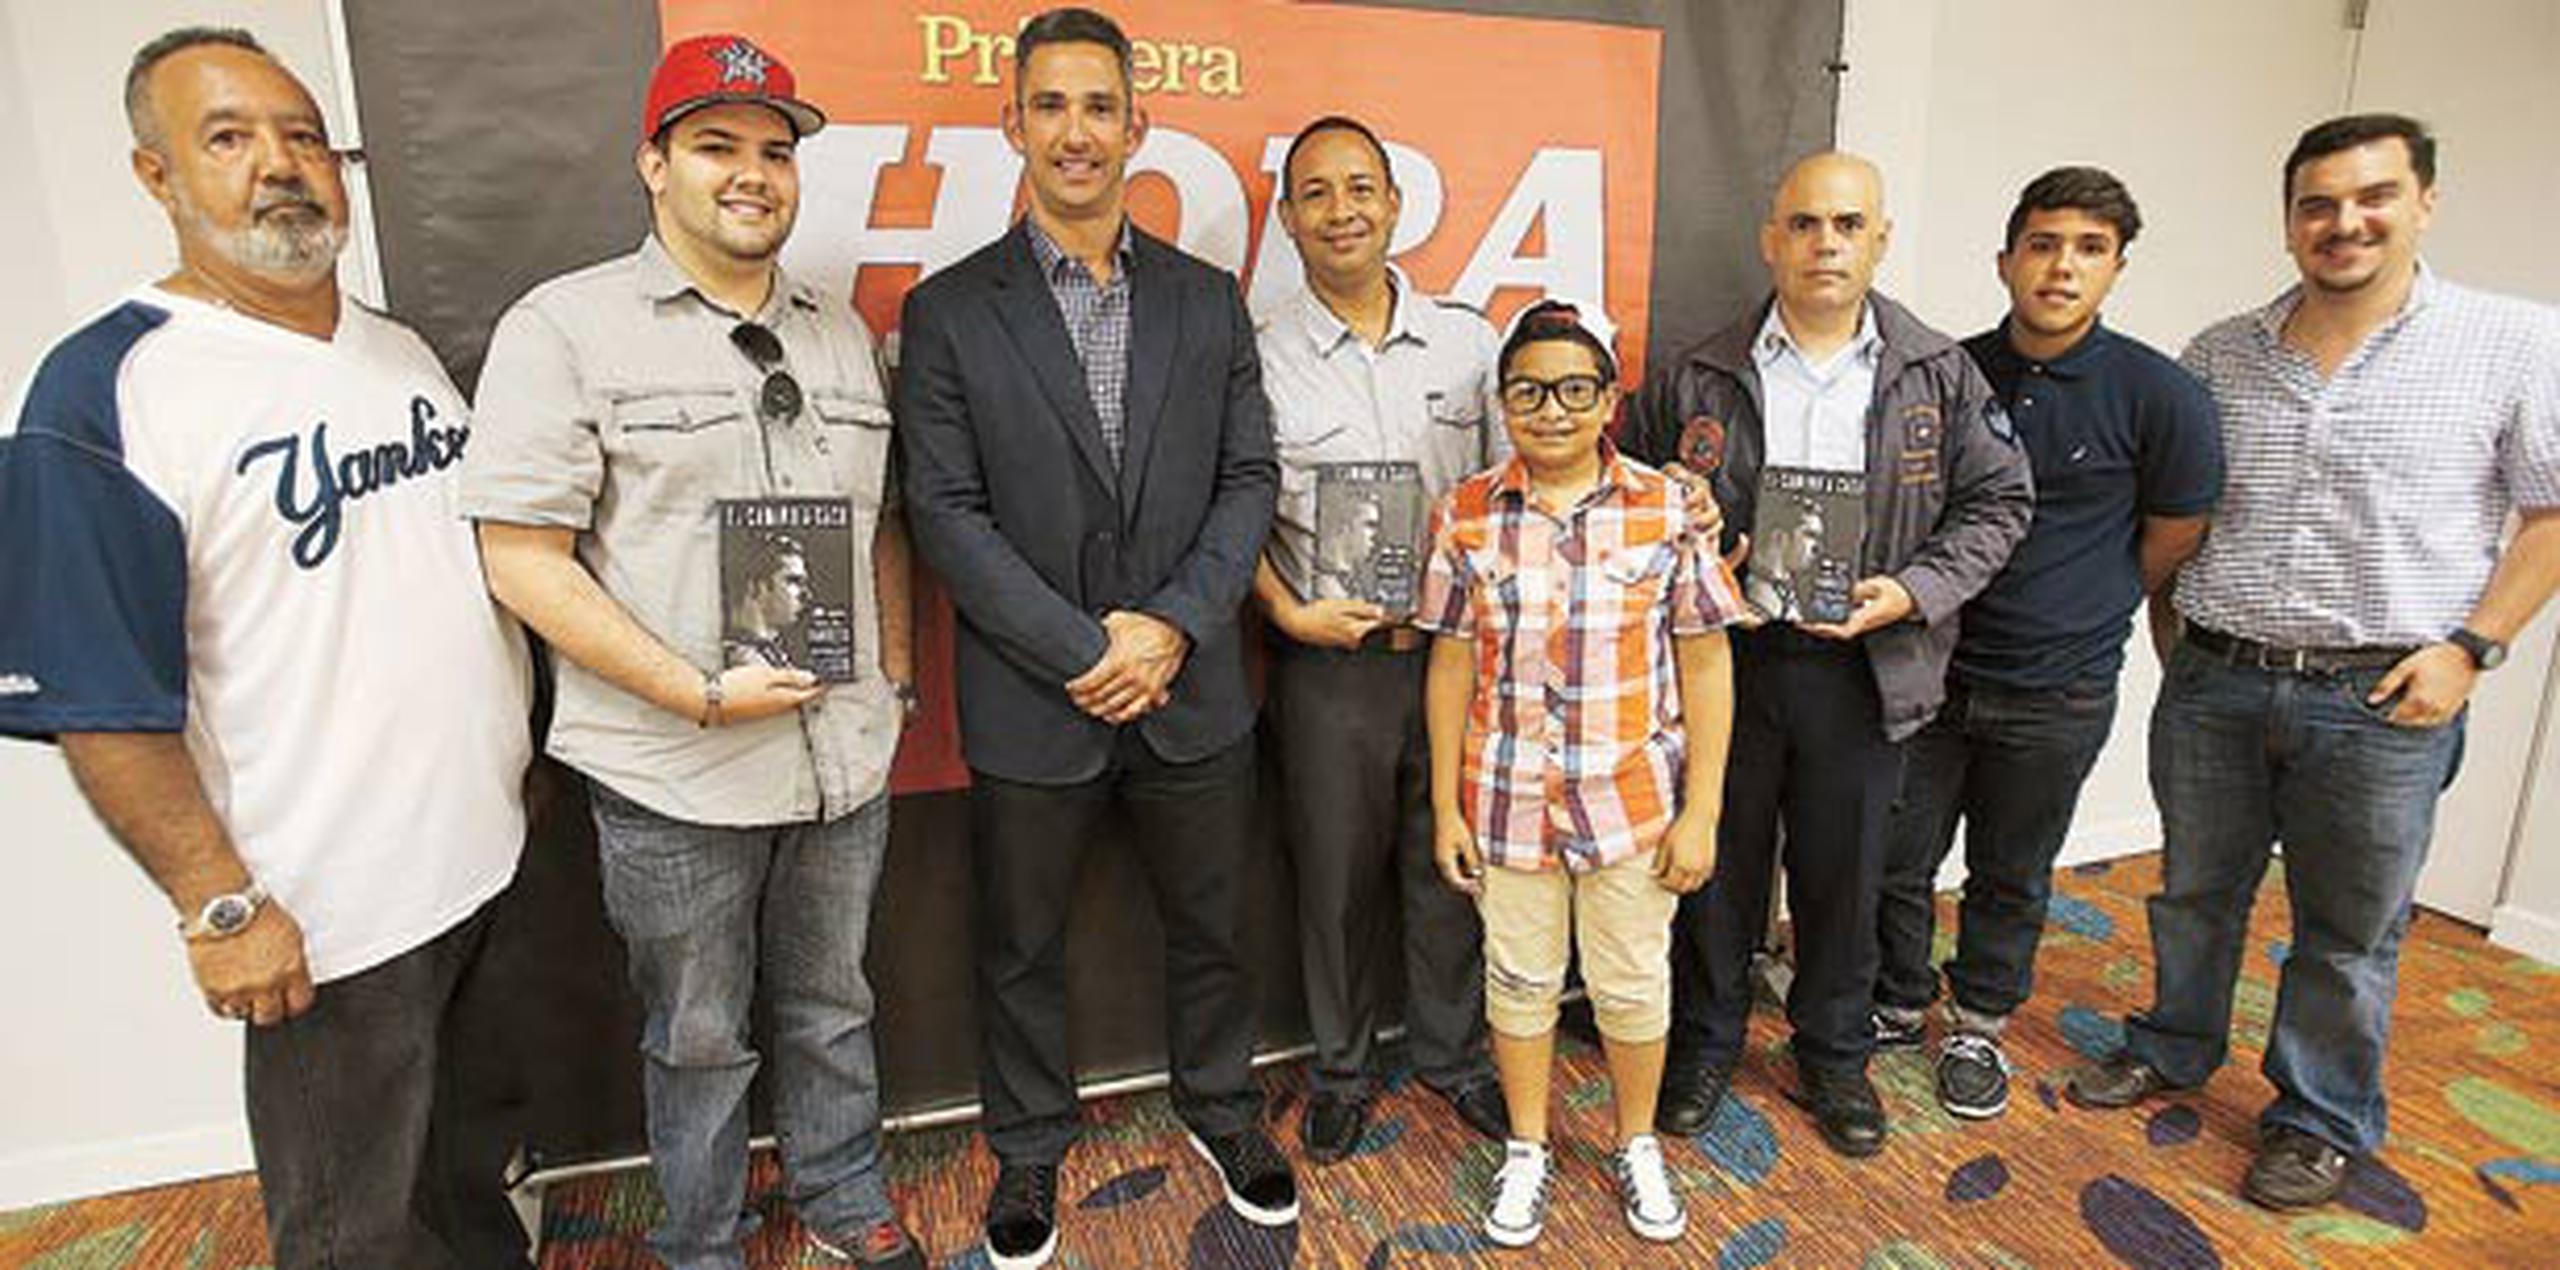 Los ganadores de un concurso de Primera Hora tuvieron la oportunidad de conocer e interrogar a Jorge Posada. (jose.candelaria@gfrmedia.com)